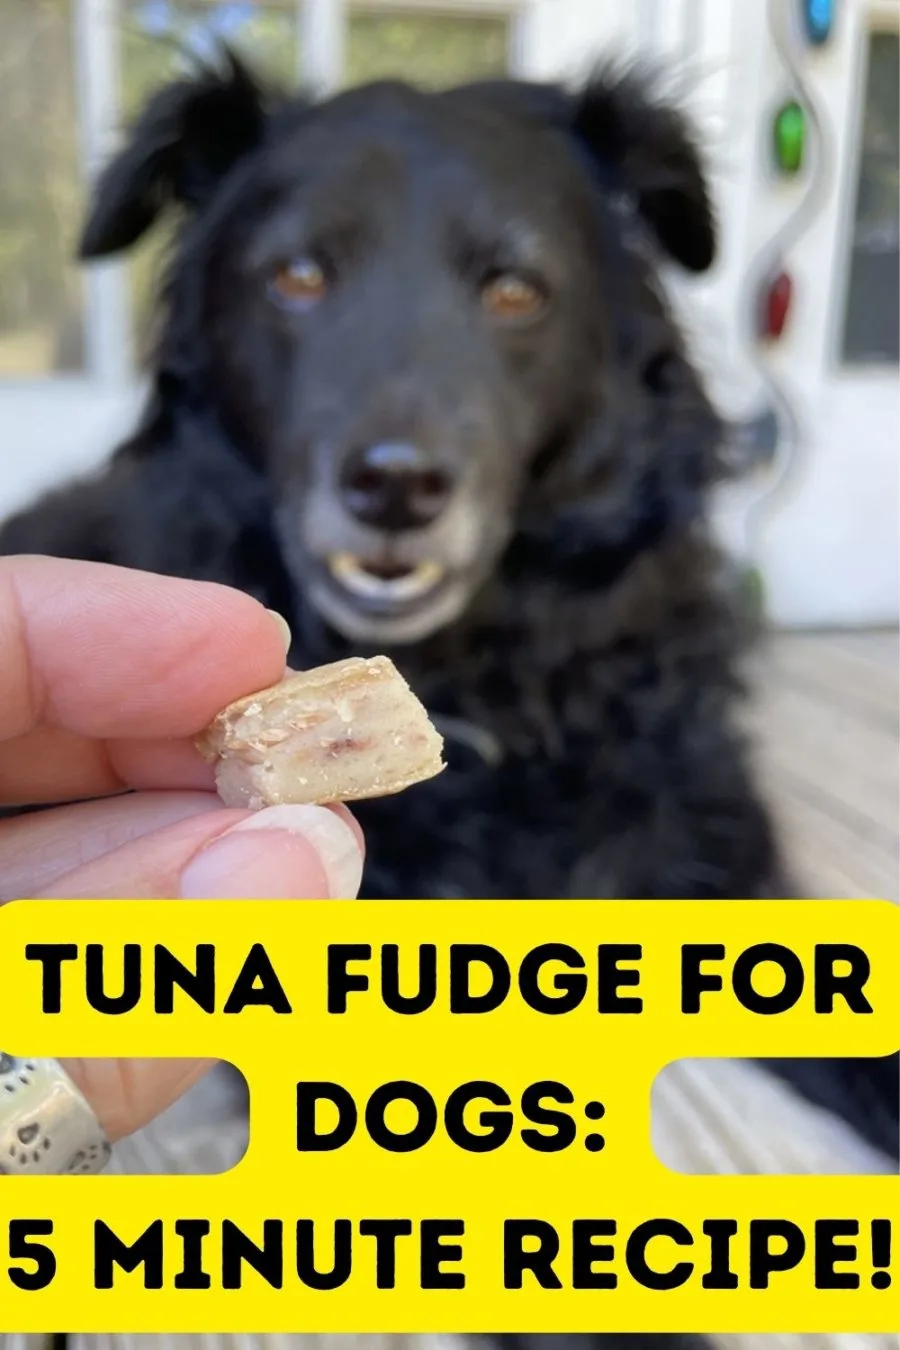 Tuna Fudge for Dogs Recipe